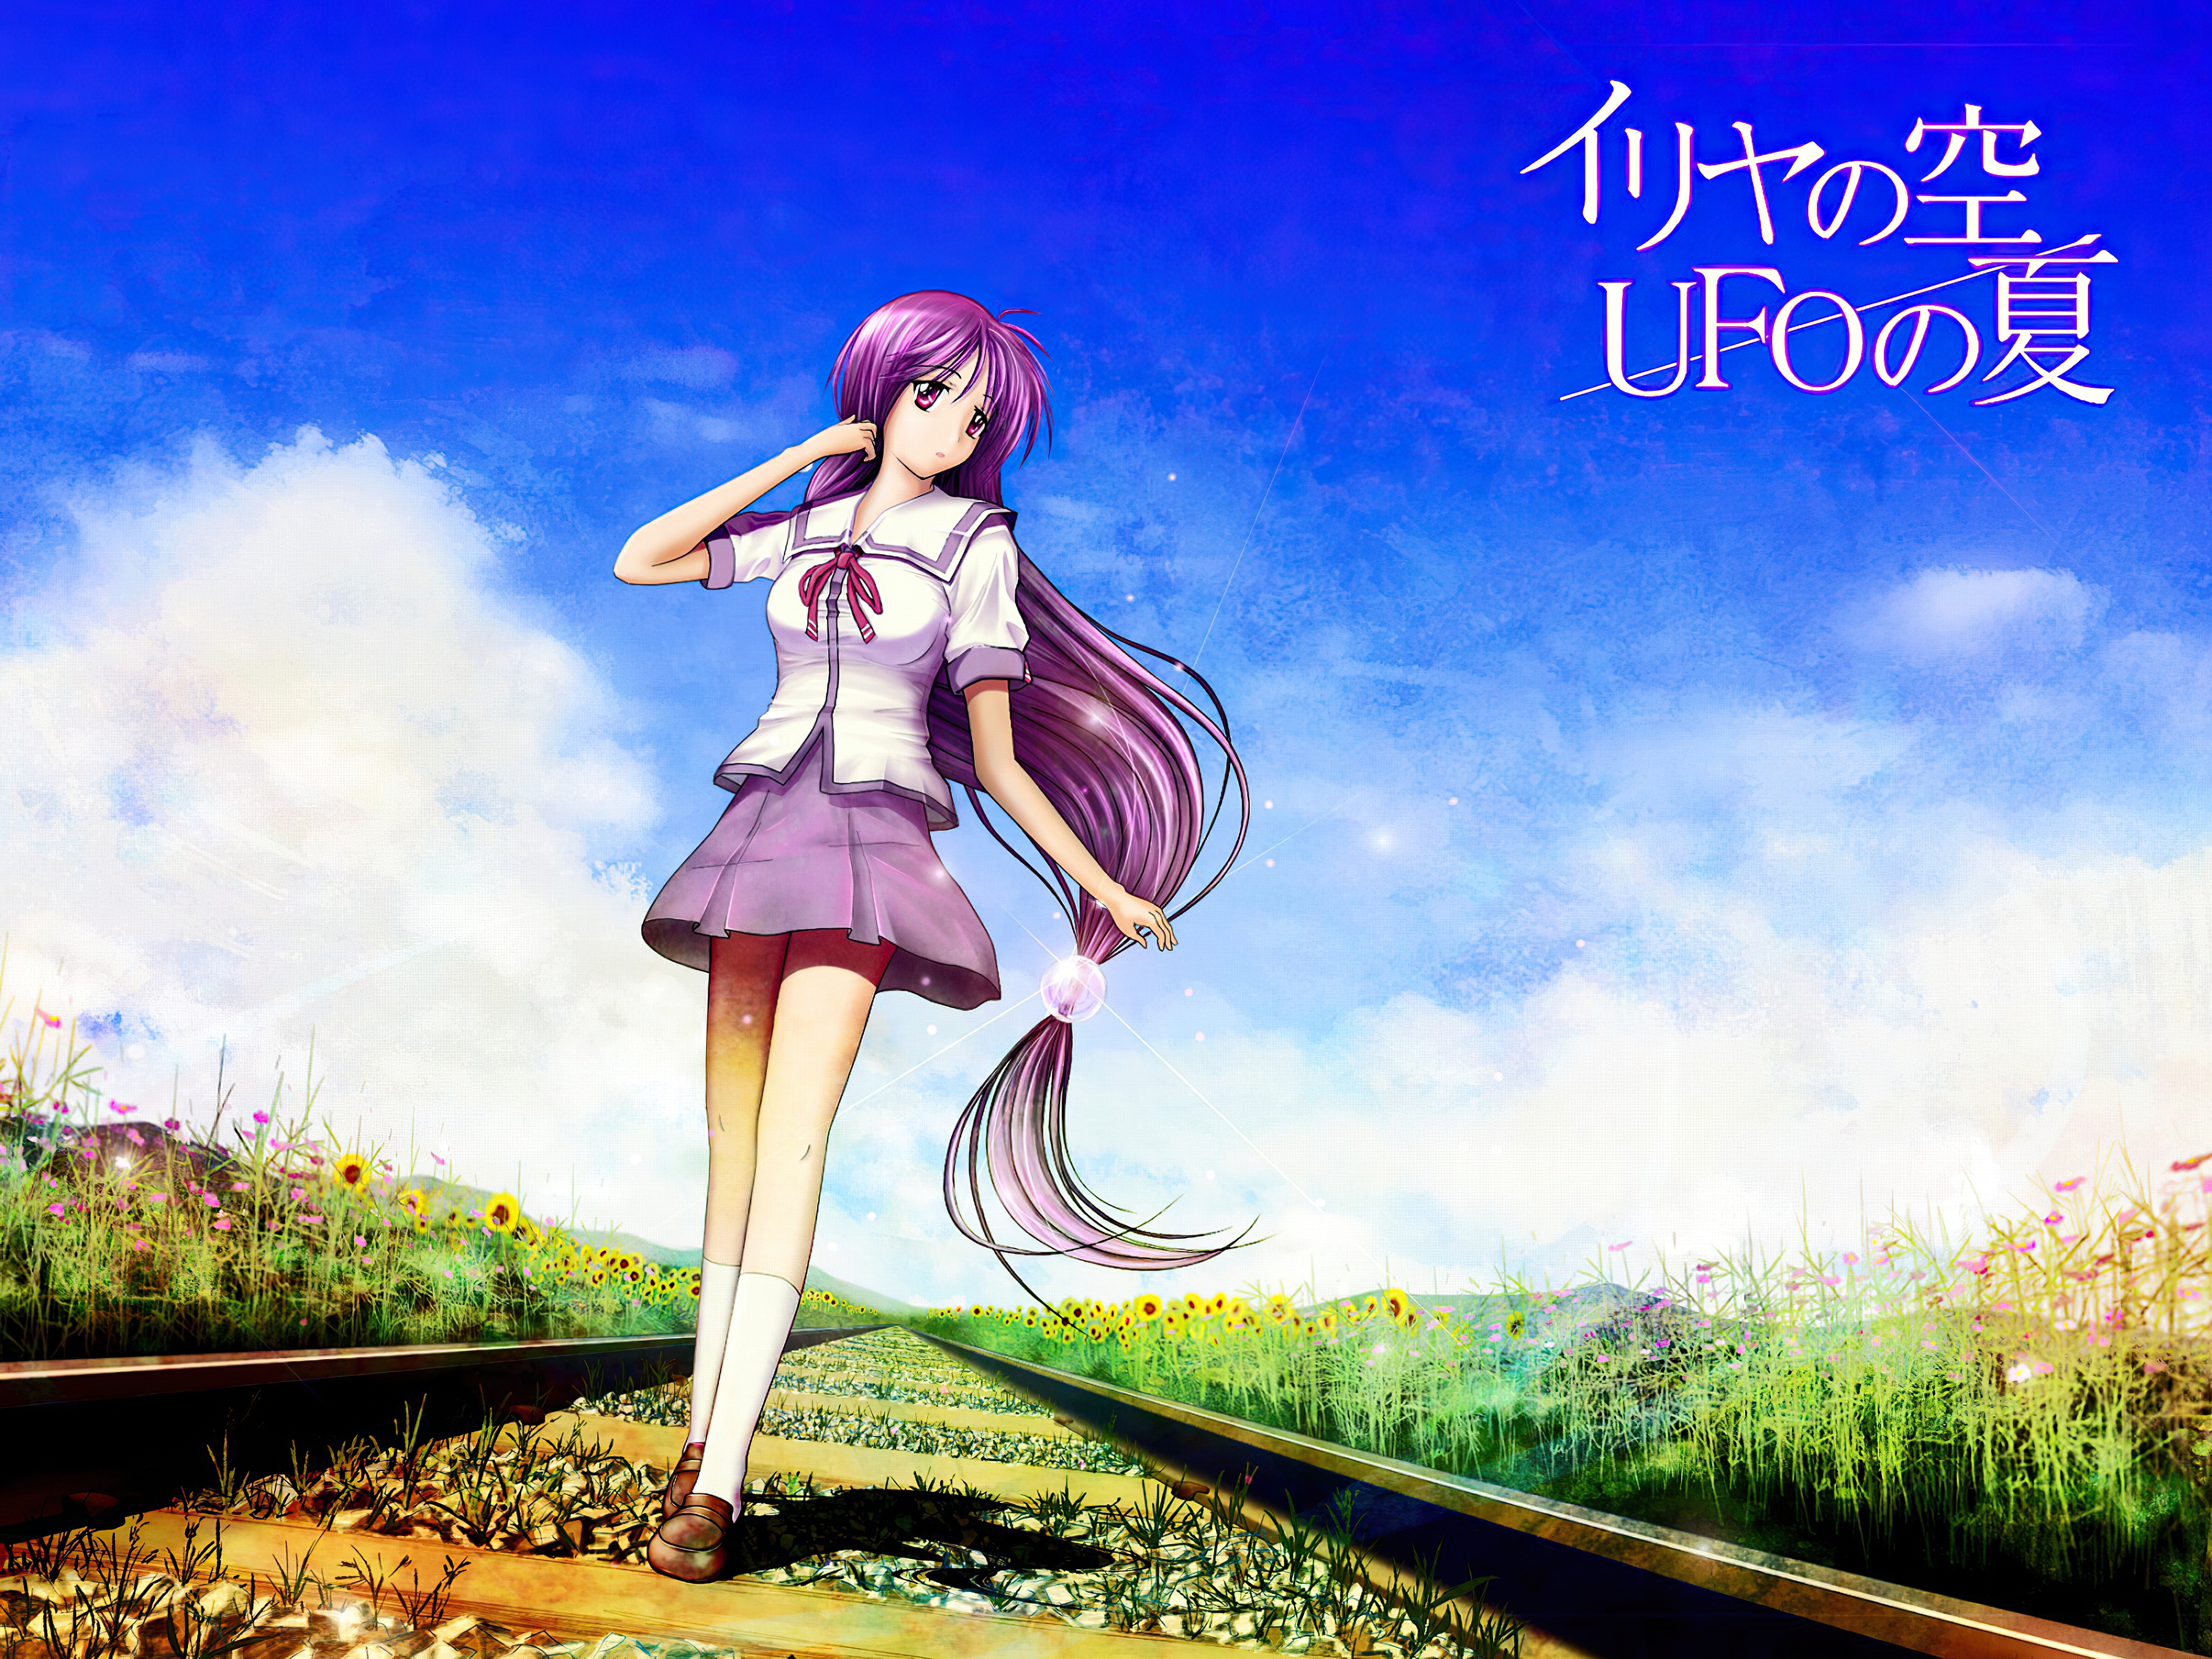 Iriya no Sora, UFO no Natsu HD Wallpaper by Ayamaru